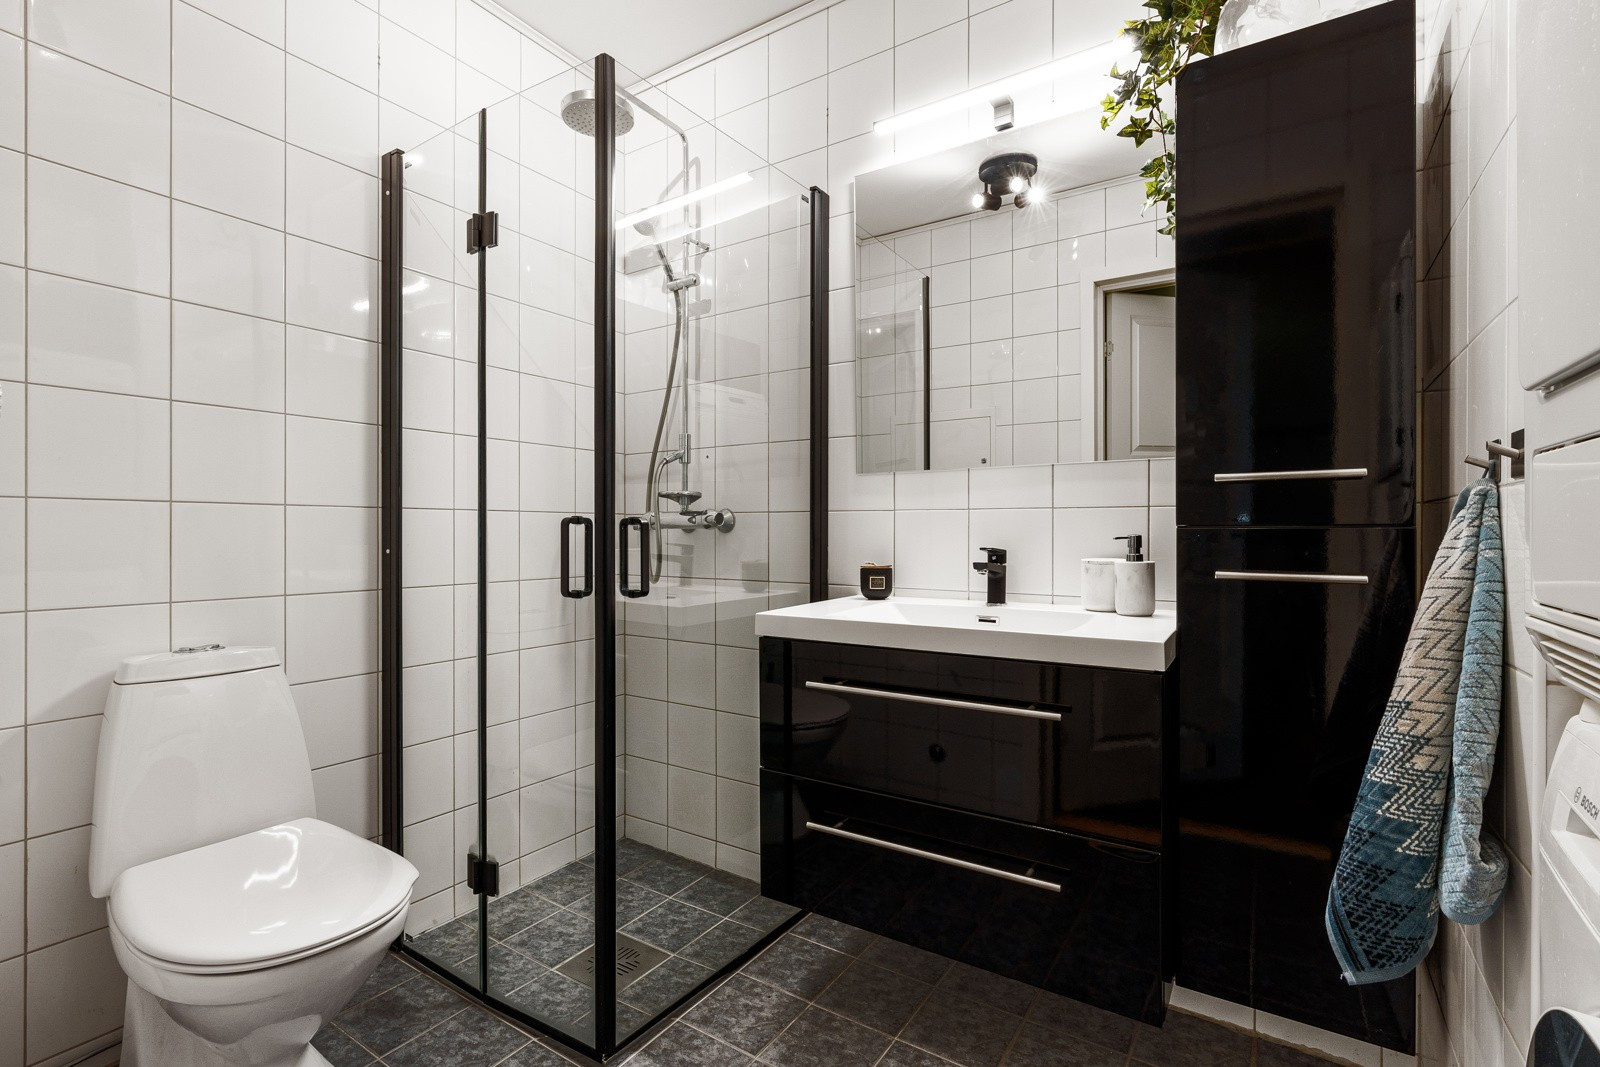 Flislagt bad som er utstyrt med romslig dusjhjørne, wc og baderomsinnredning med god oppbevaringsplass. Både innredningen og dusjdørene er skiftet.